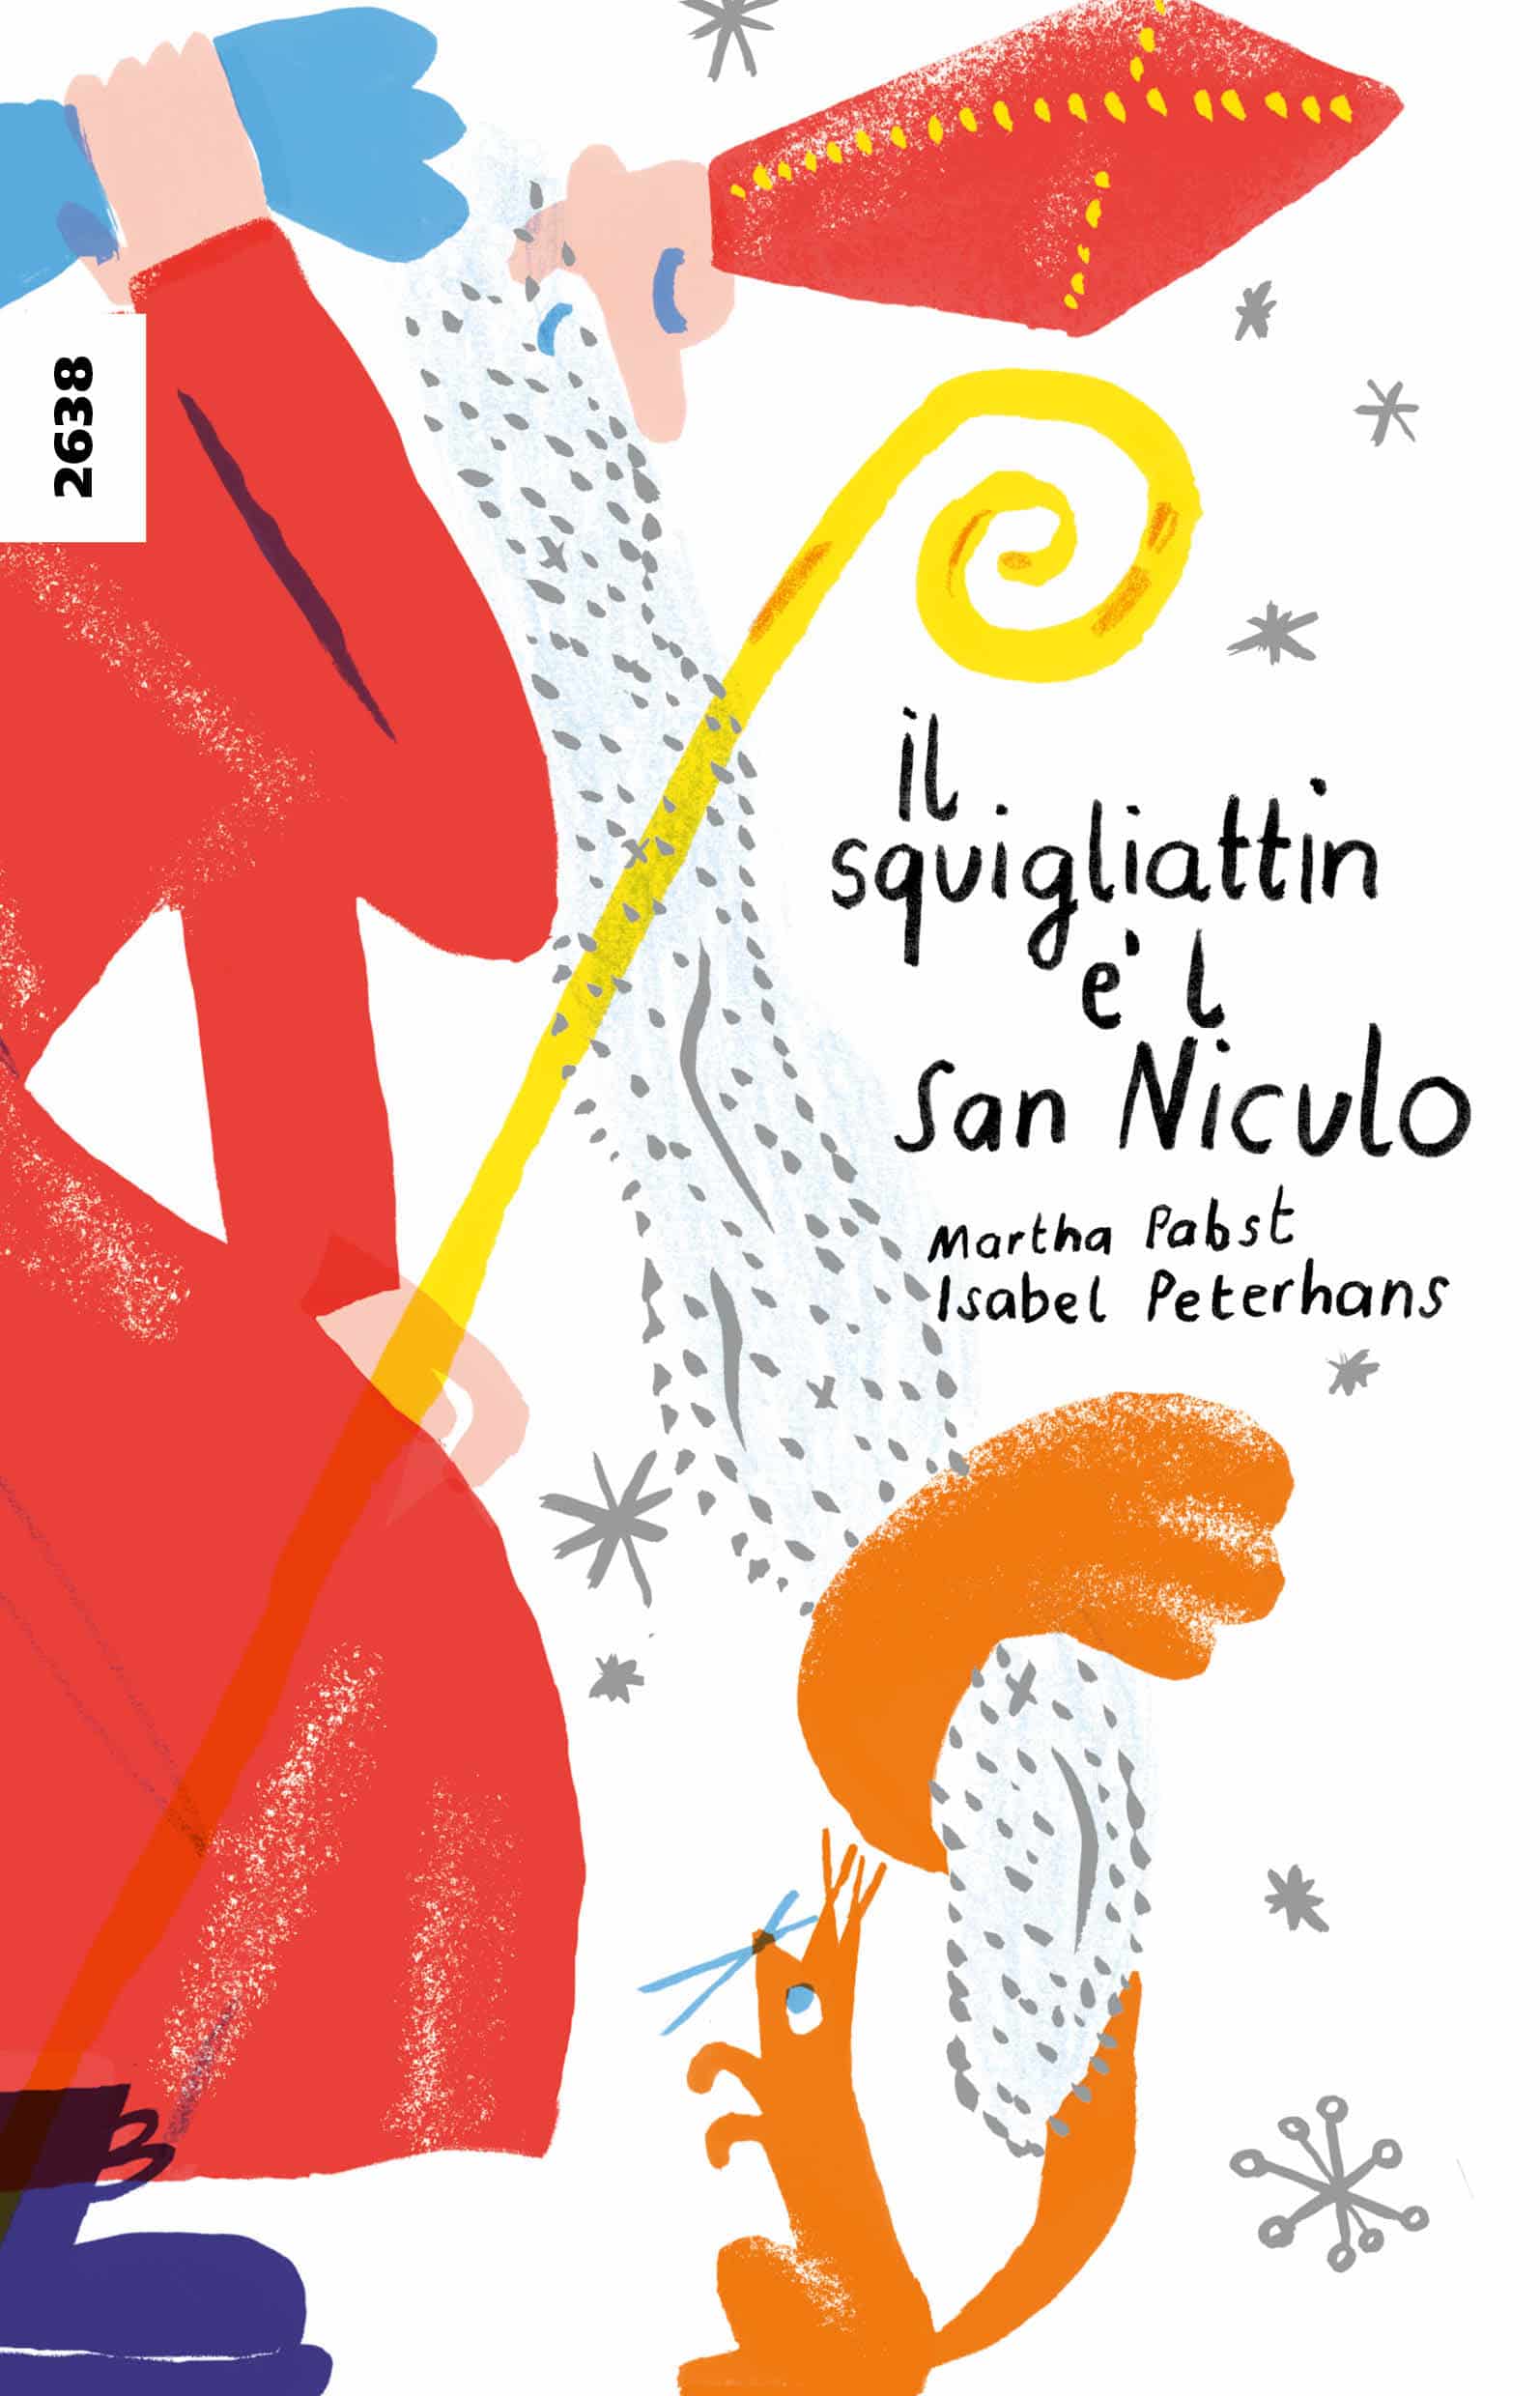 Il squigliattin e' l San Niculo, ein Kinderbuch von Martha Pabst, Illustration von Isabel Peterhans, SJW Verlag, Advent